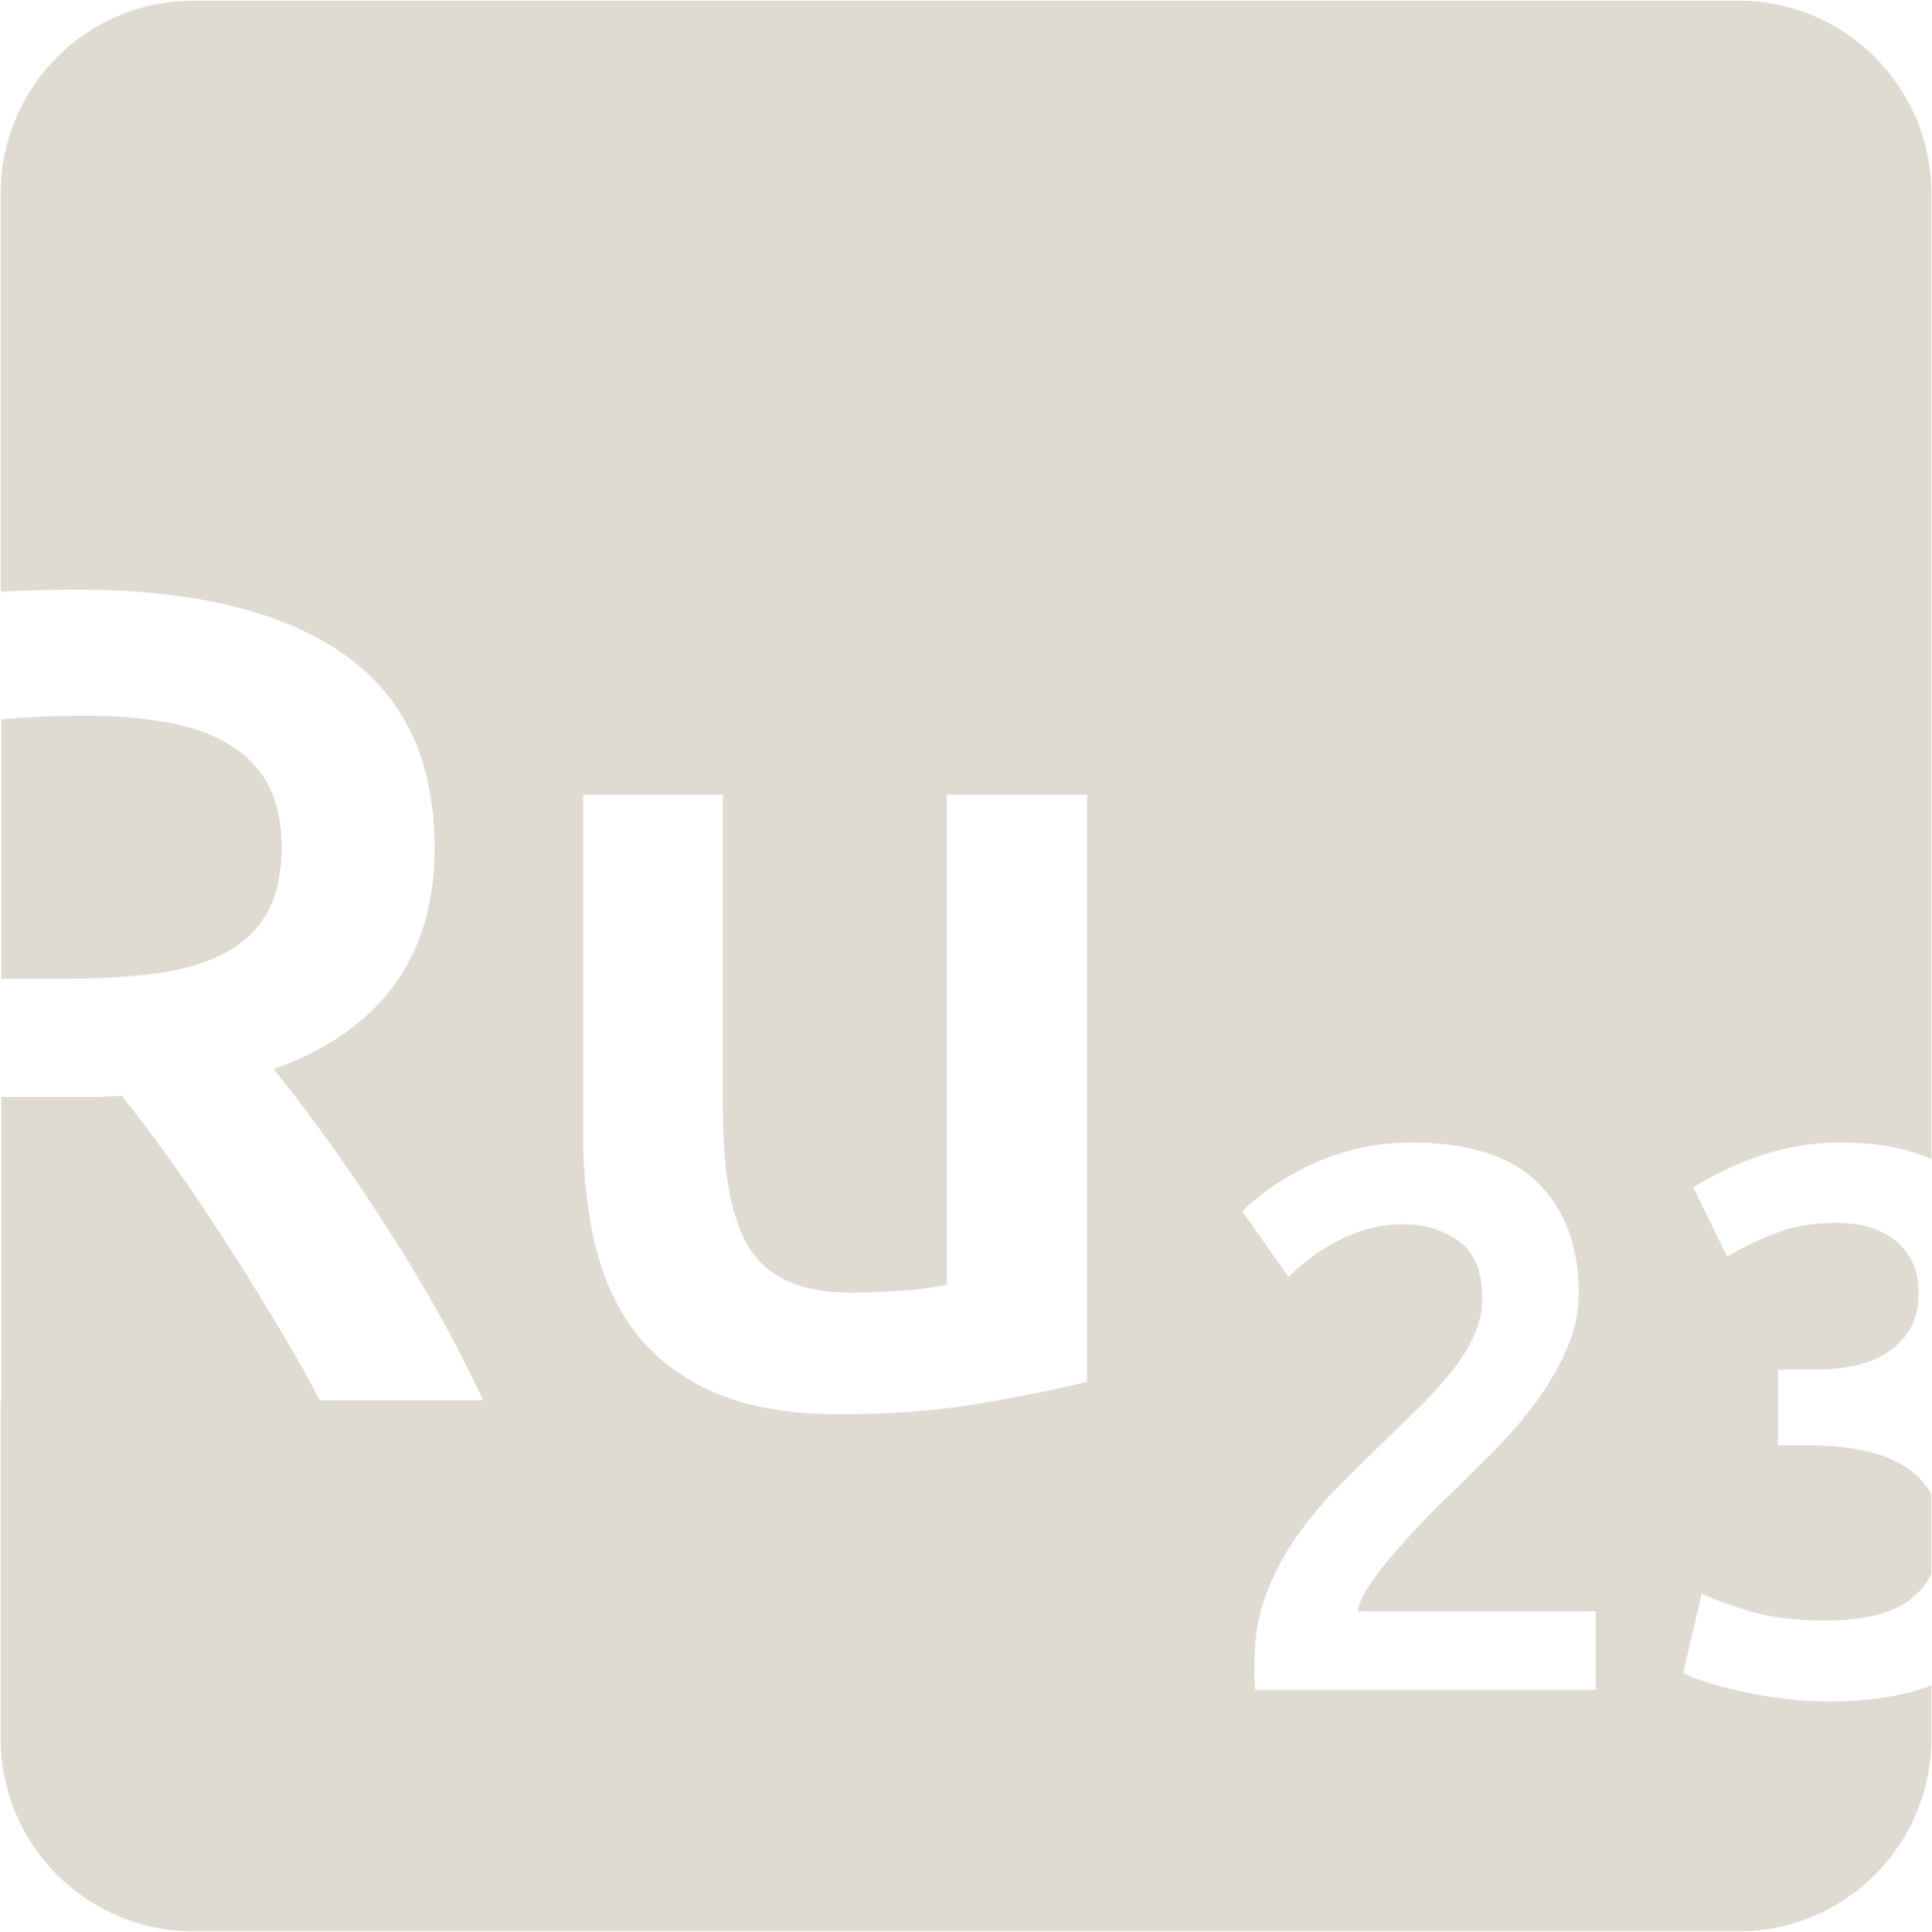 indicator keyboard Ru 23 icon